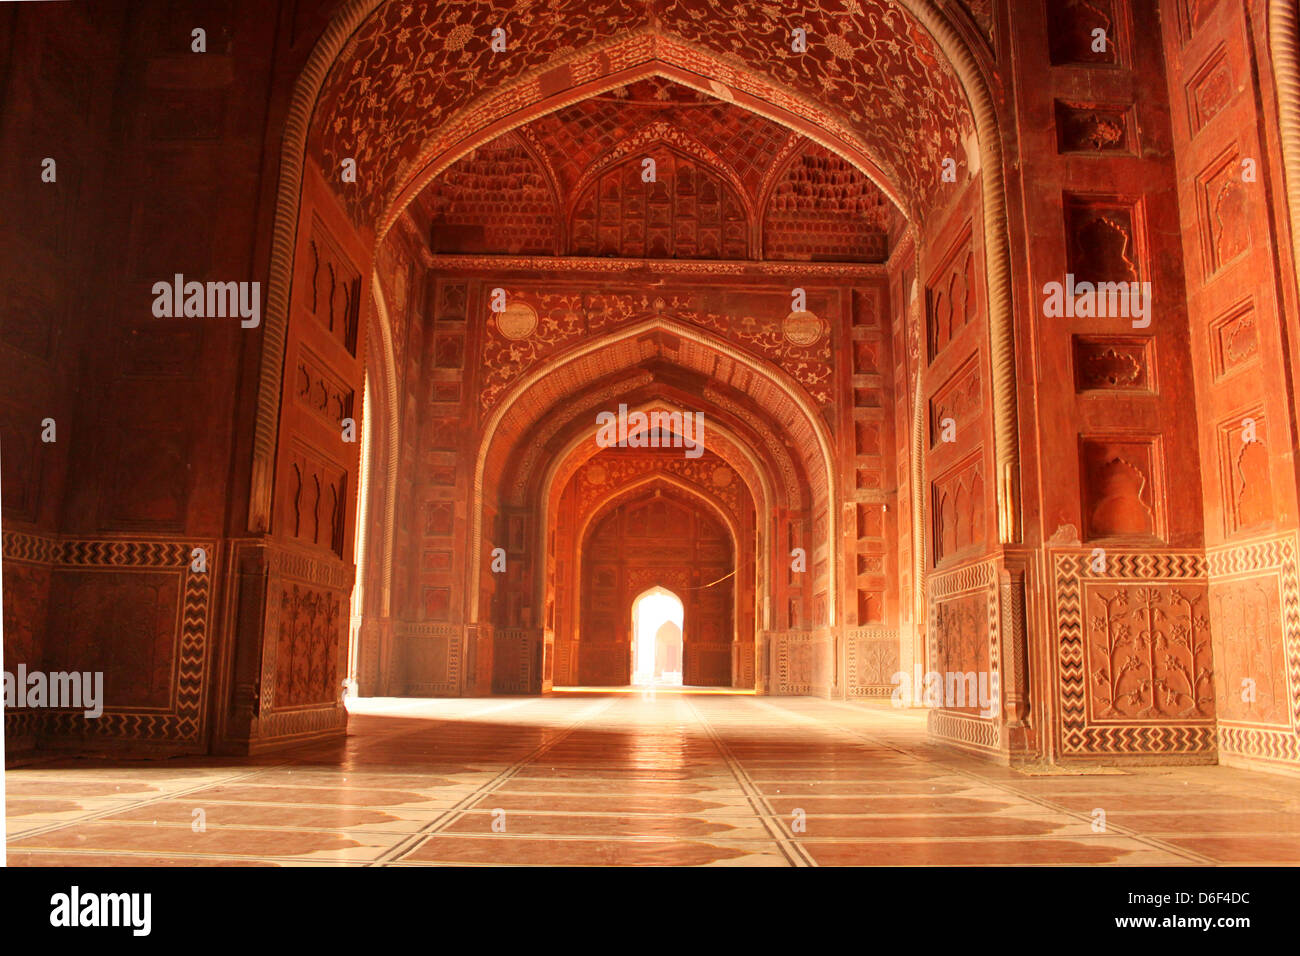 Intérieur de la mosquée du Taj Mahal, site du patrimoine mondial de l'Agra, Uttar Pradesh, Inde Banque D'Images